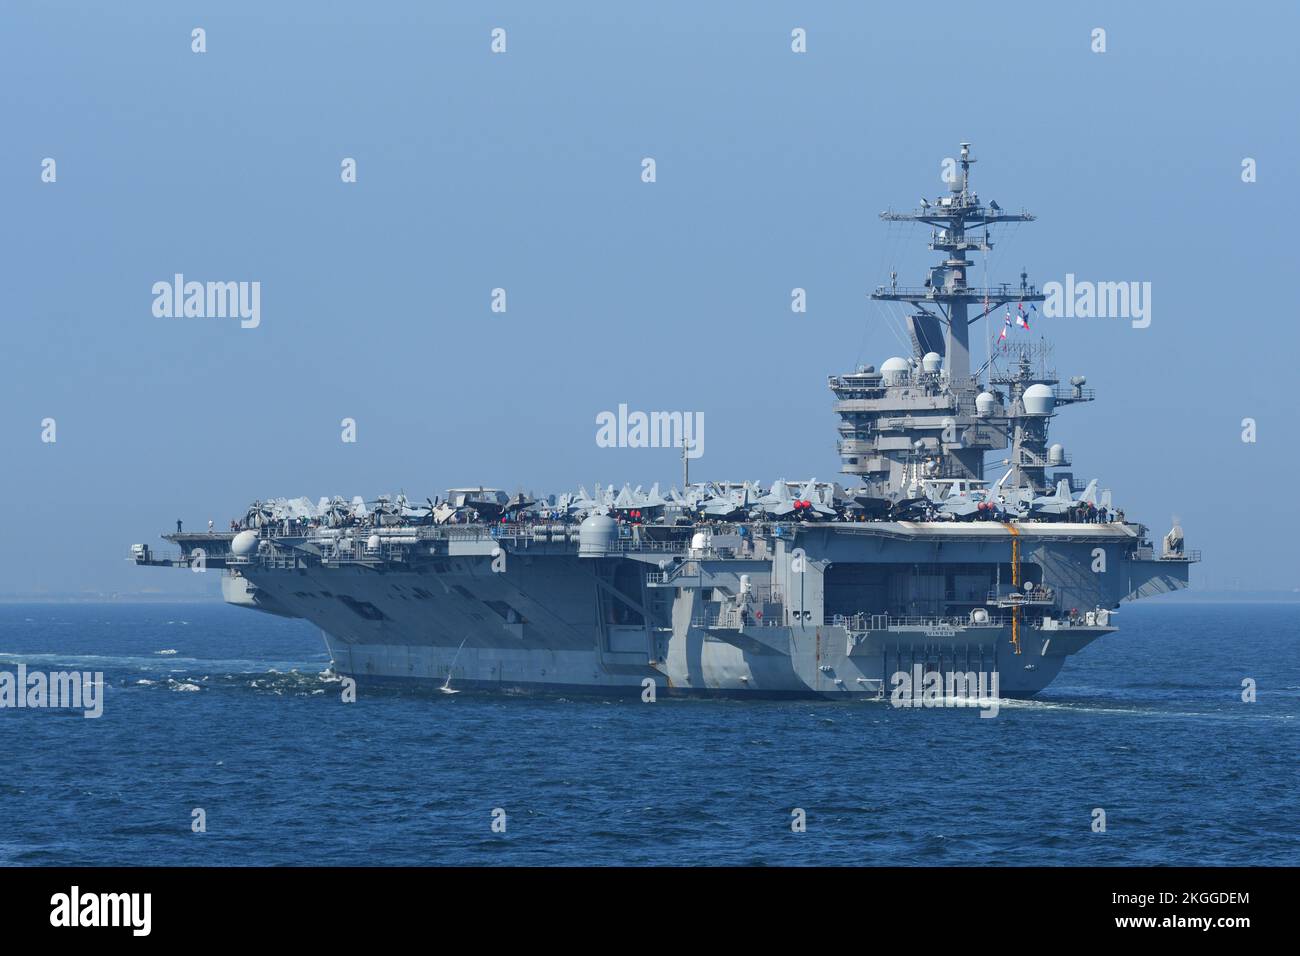 Préfecture de Kanagawa, Japon - 28 août 2021 : USS Carl Vinson (CVN-70), porte-avions de la classe Nimitz. Banque D'Images